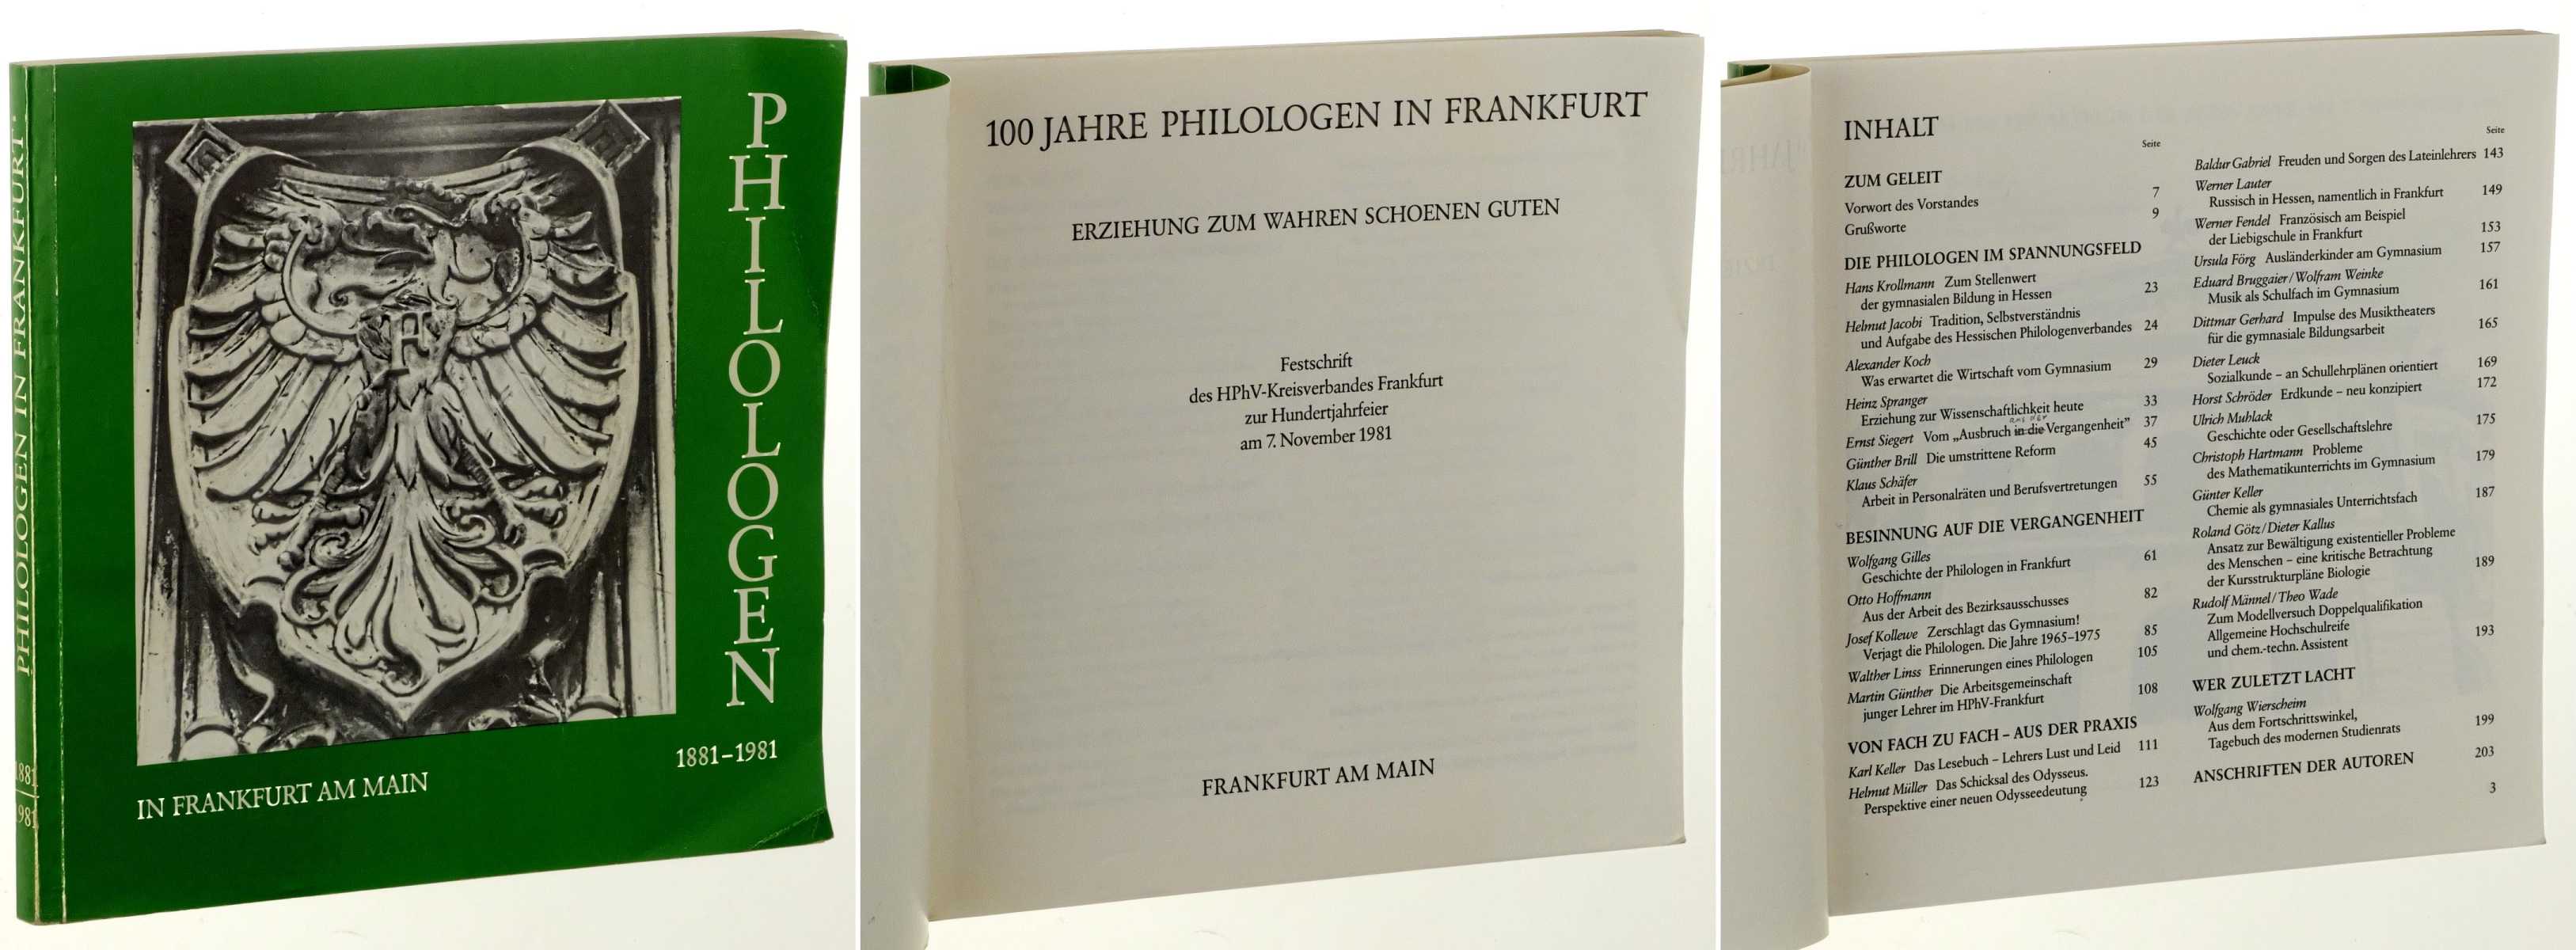   Philologen in Frankfurt am Main 1881-1981. Erziehung zum Wahren Schoenen Guten. Festschrift des HPhV-Kreisverbandes Frankfurt zur Hundertjahrfeier am 7. November 1981. 